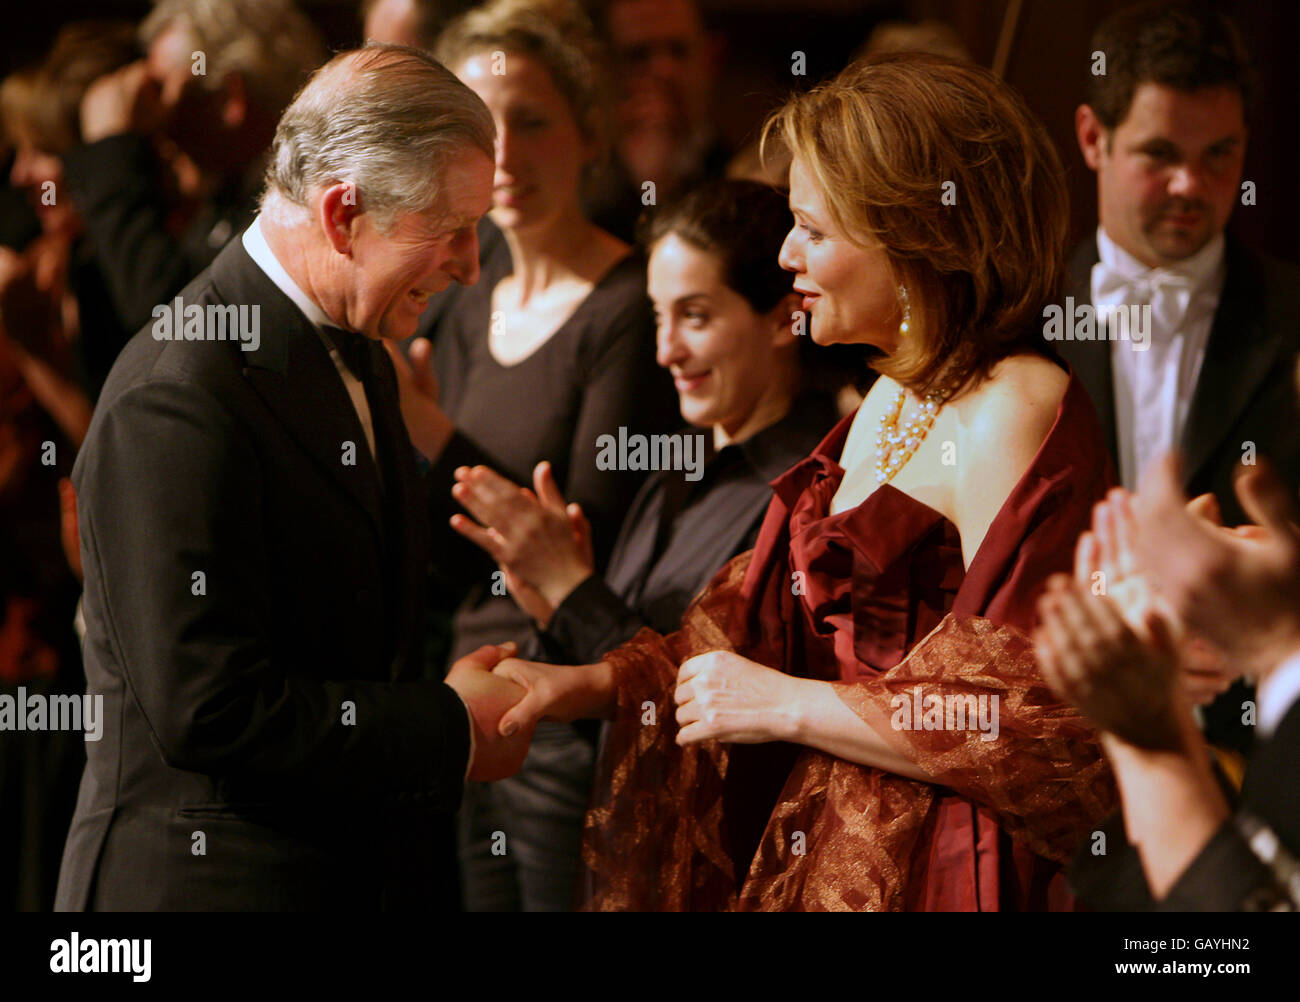 HRH le Prince de Galles parle à la chanteuse Renee Fleming lors d'un dîner de gala pour les supporters de la Fondation du Prince pour les enfants et les arts à Buckingham Palace, Londres. Banque D'Images